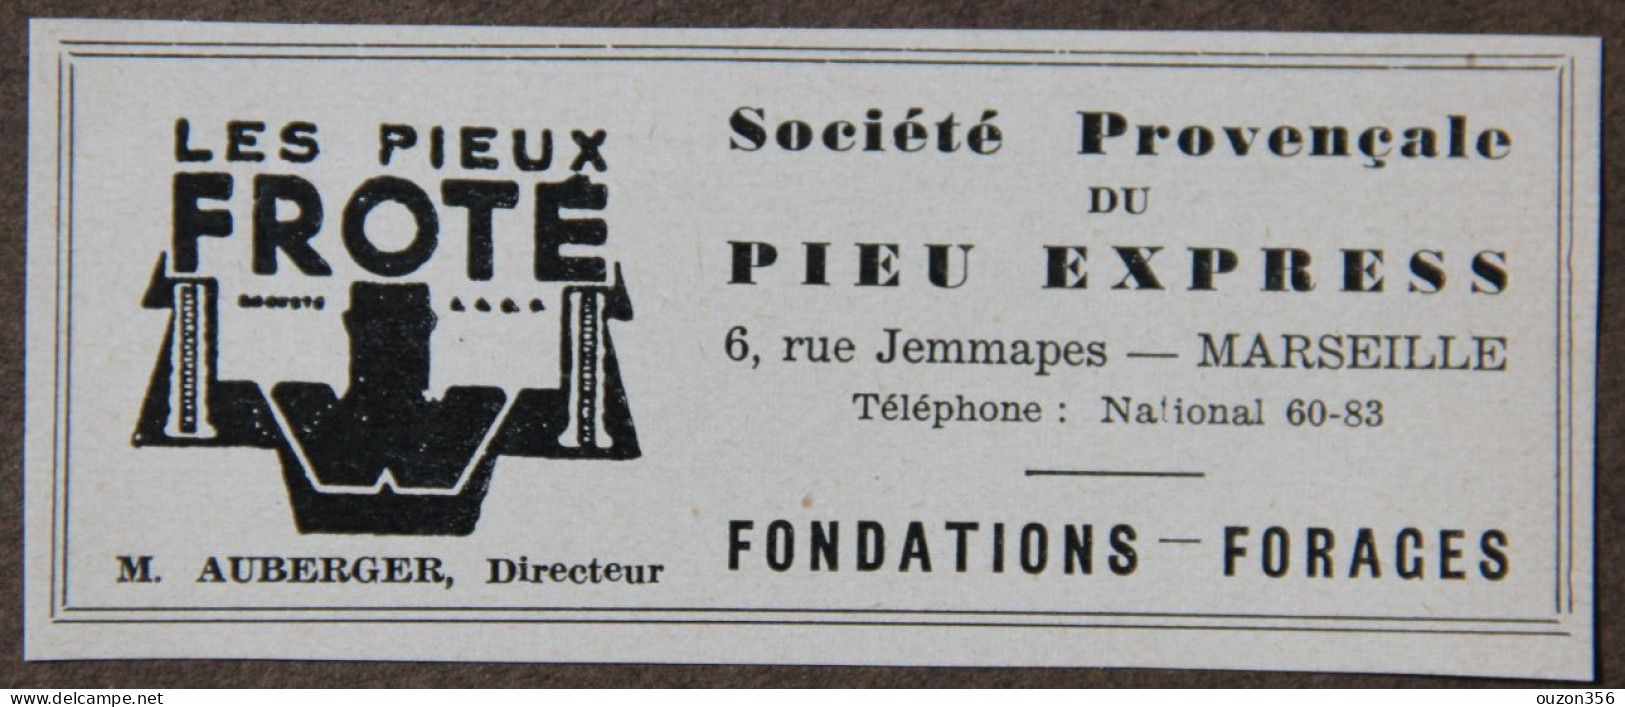 Publicité, Sté Provençale Du Pieu Express, Les Pieux Froté, Fondations, Forages, Marseille, 1951 - Werbung